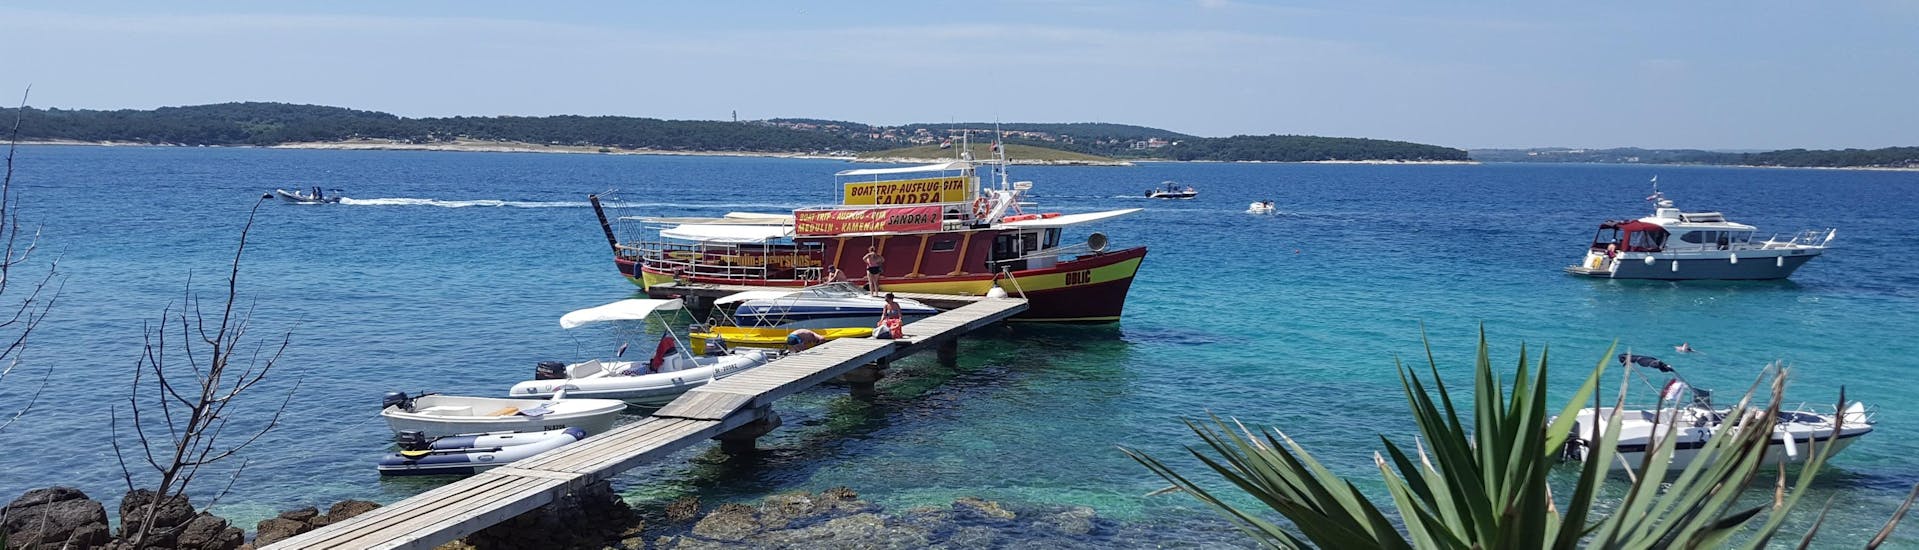 Das Boot von Medulin Excursions liegt an der Anlegestelle, während die Leute für die Bootstour zum Kap Kamenjak ab Medulin mit Schwimmen an Bord gehen.